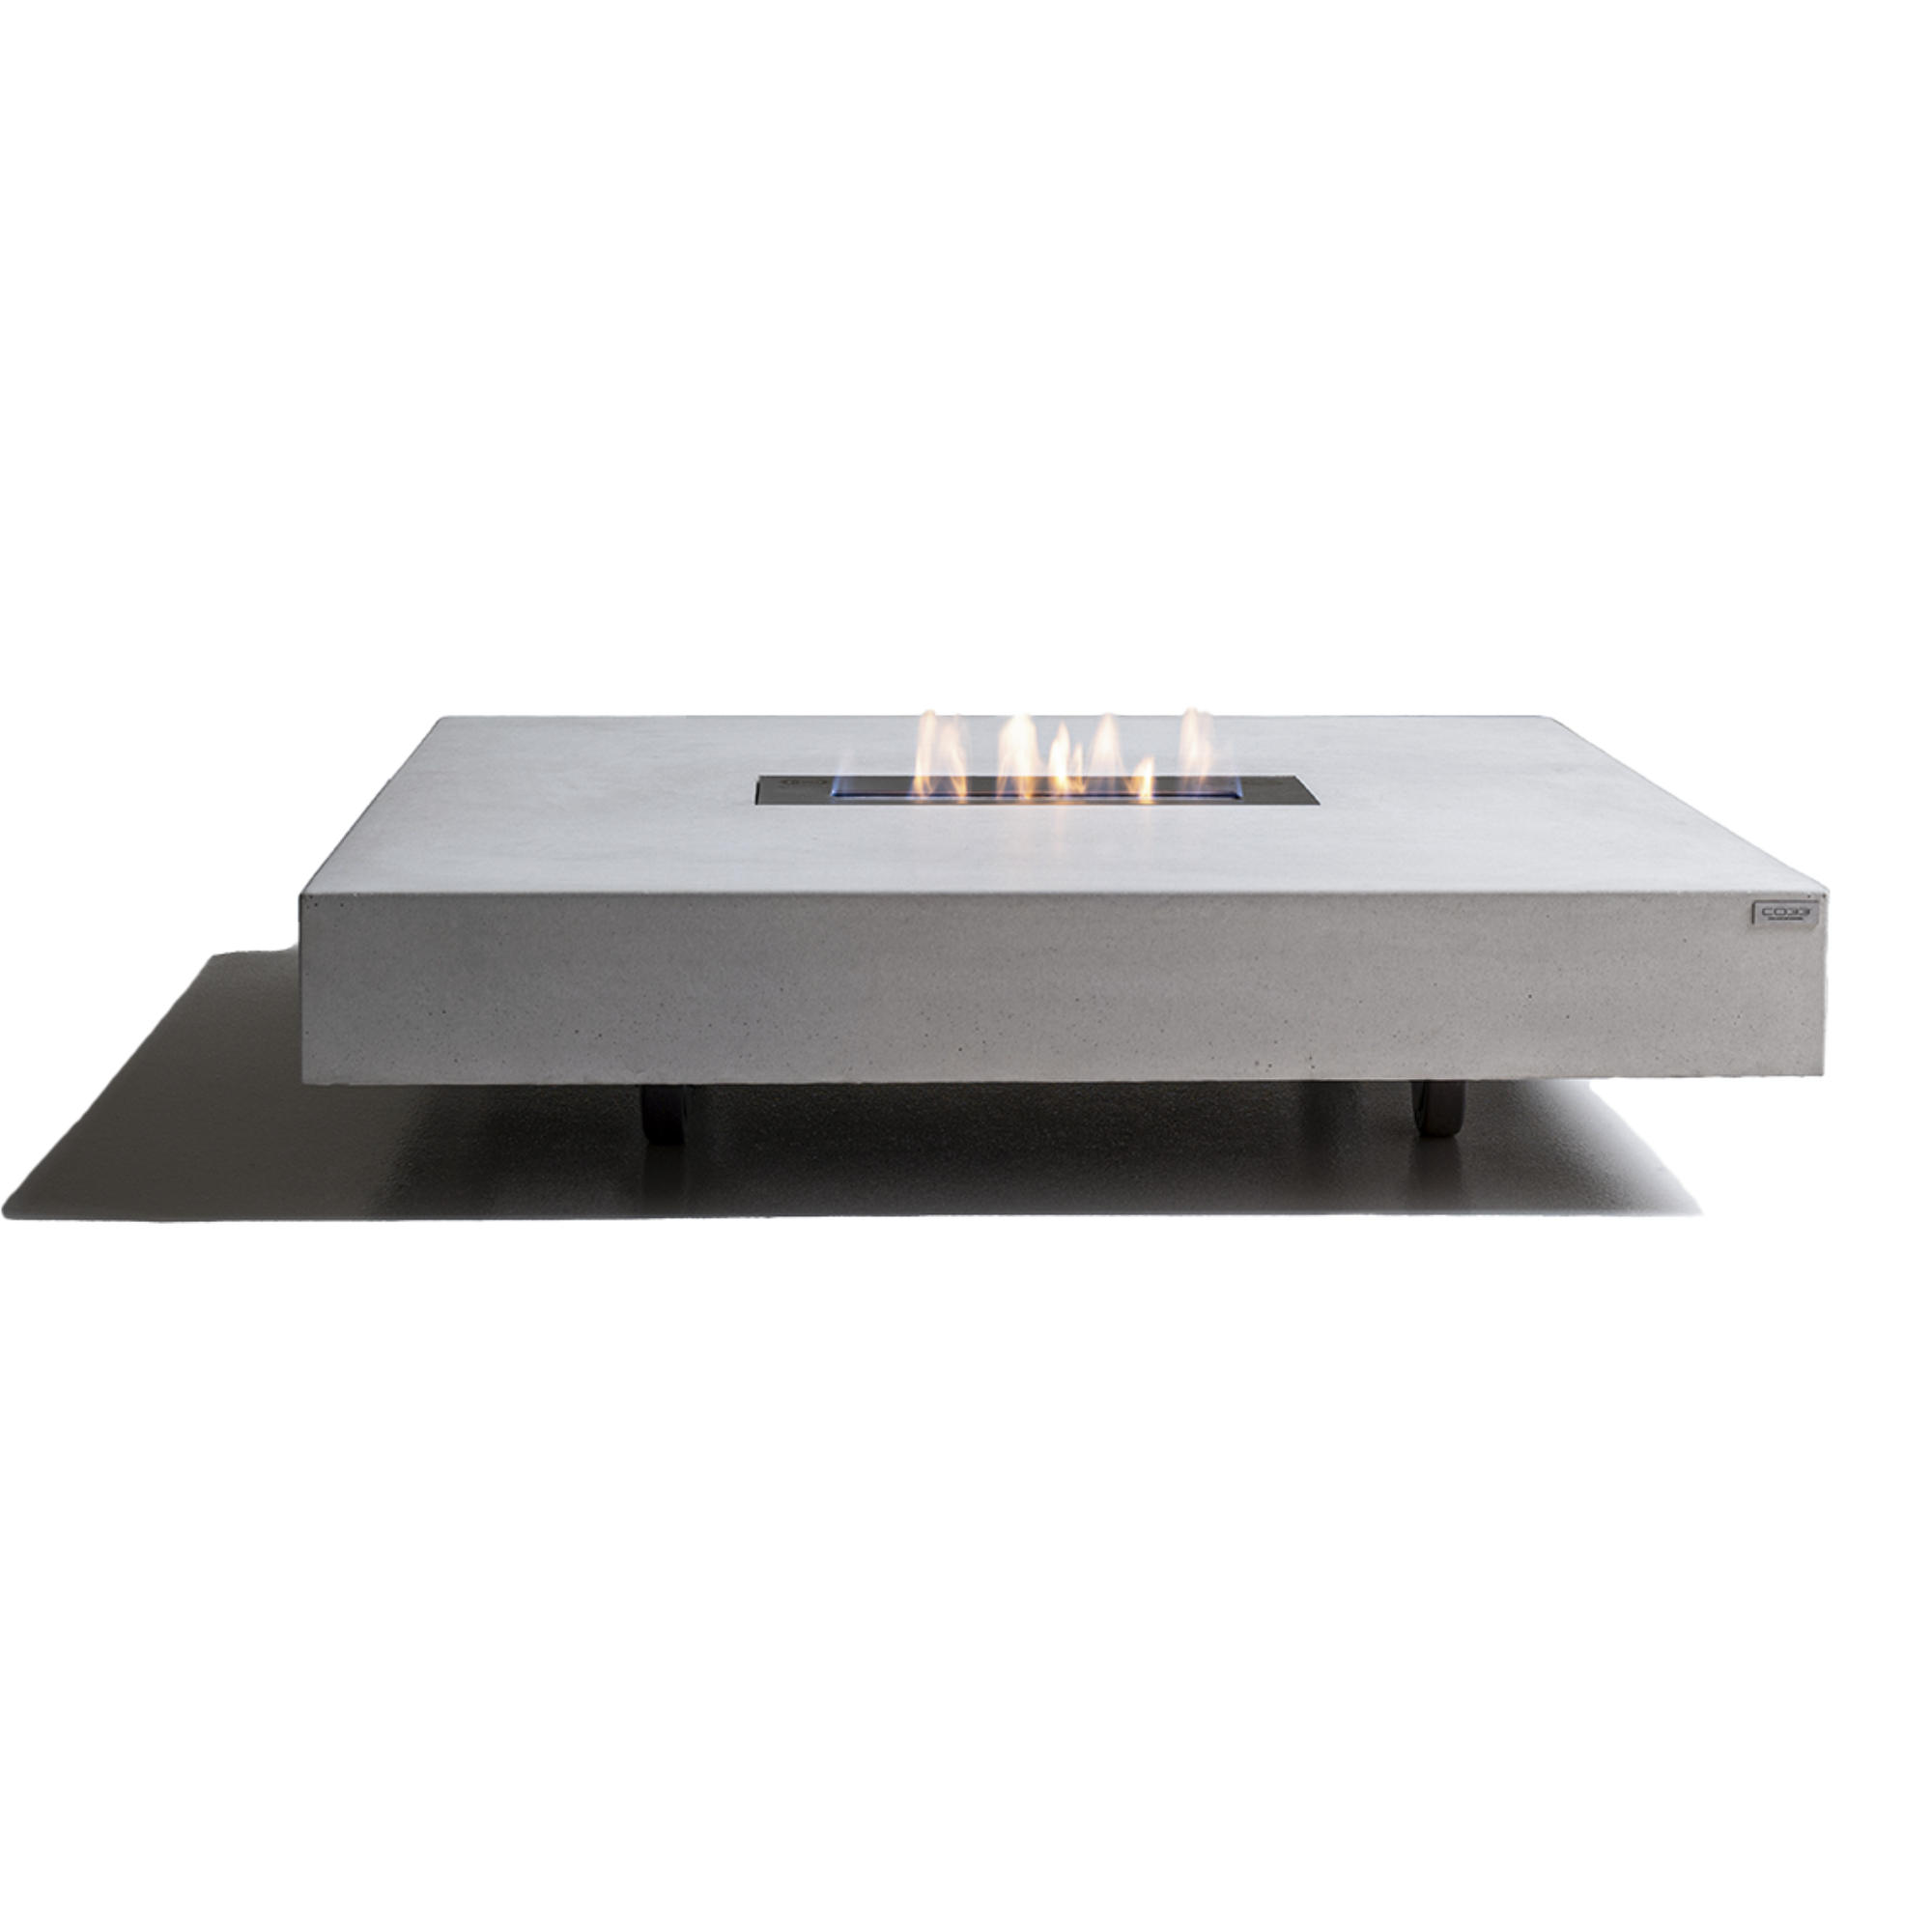 Feuertisch aus Beton mit Rollen  - prämiertes Design - CO33 Betonmöbel